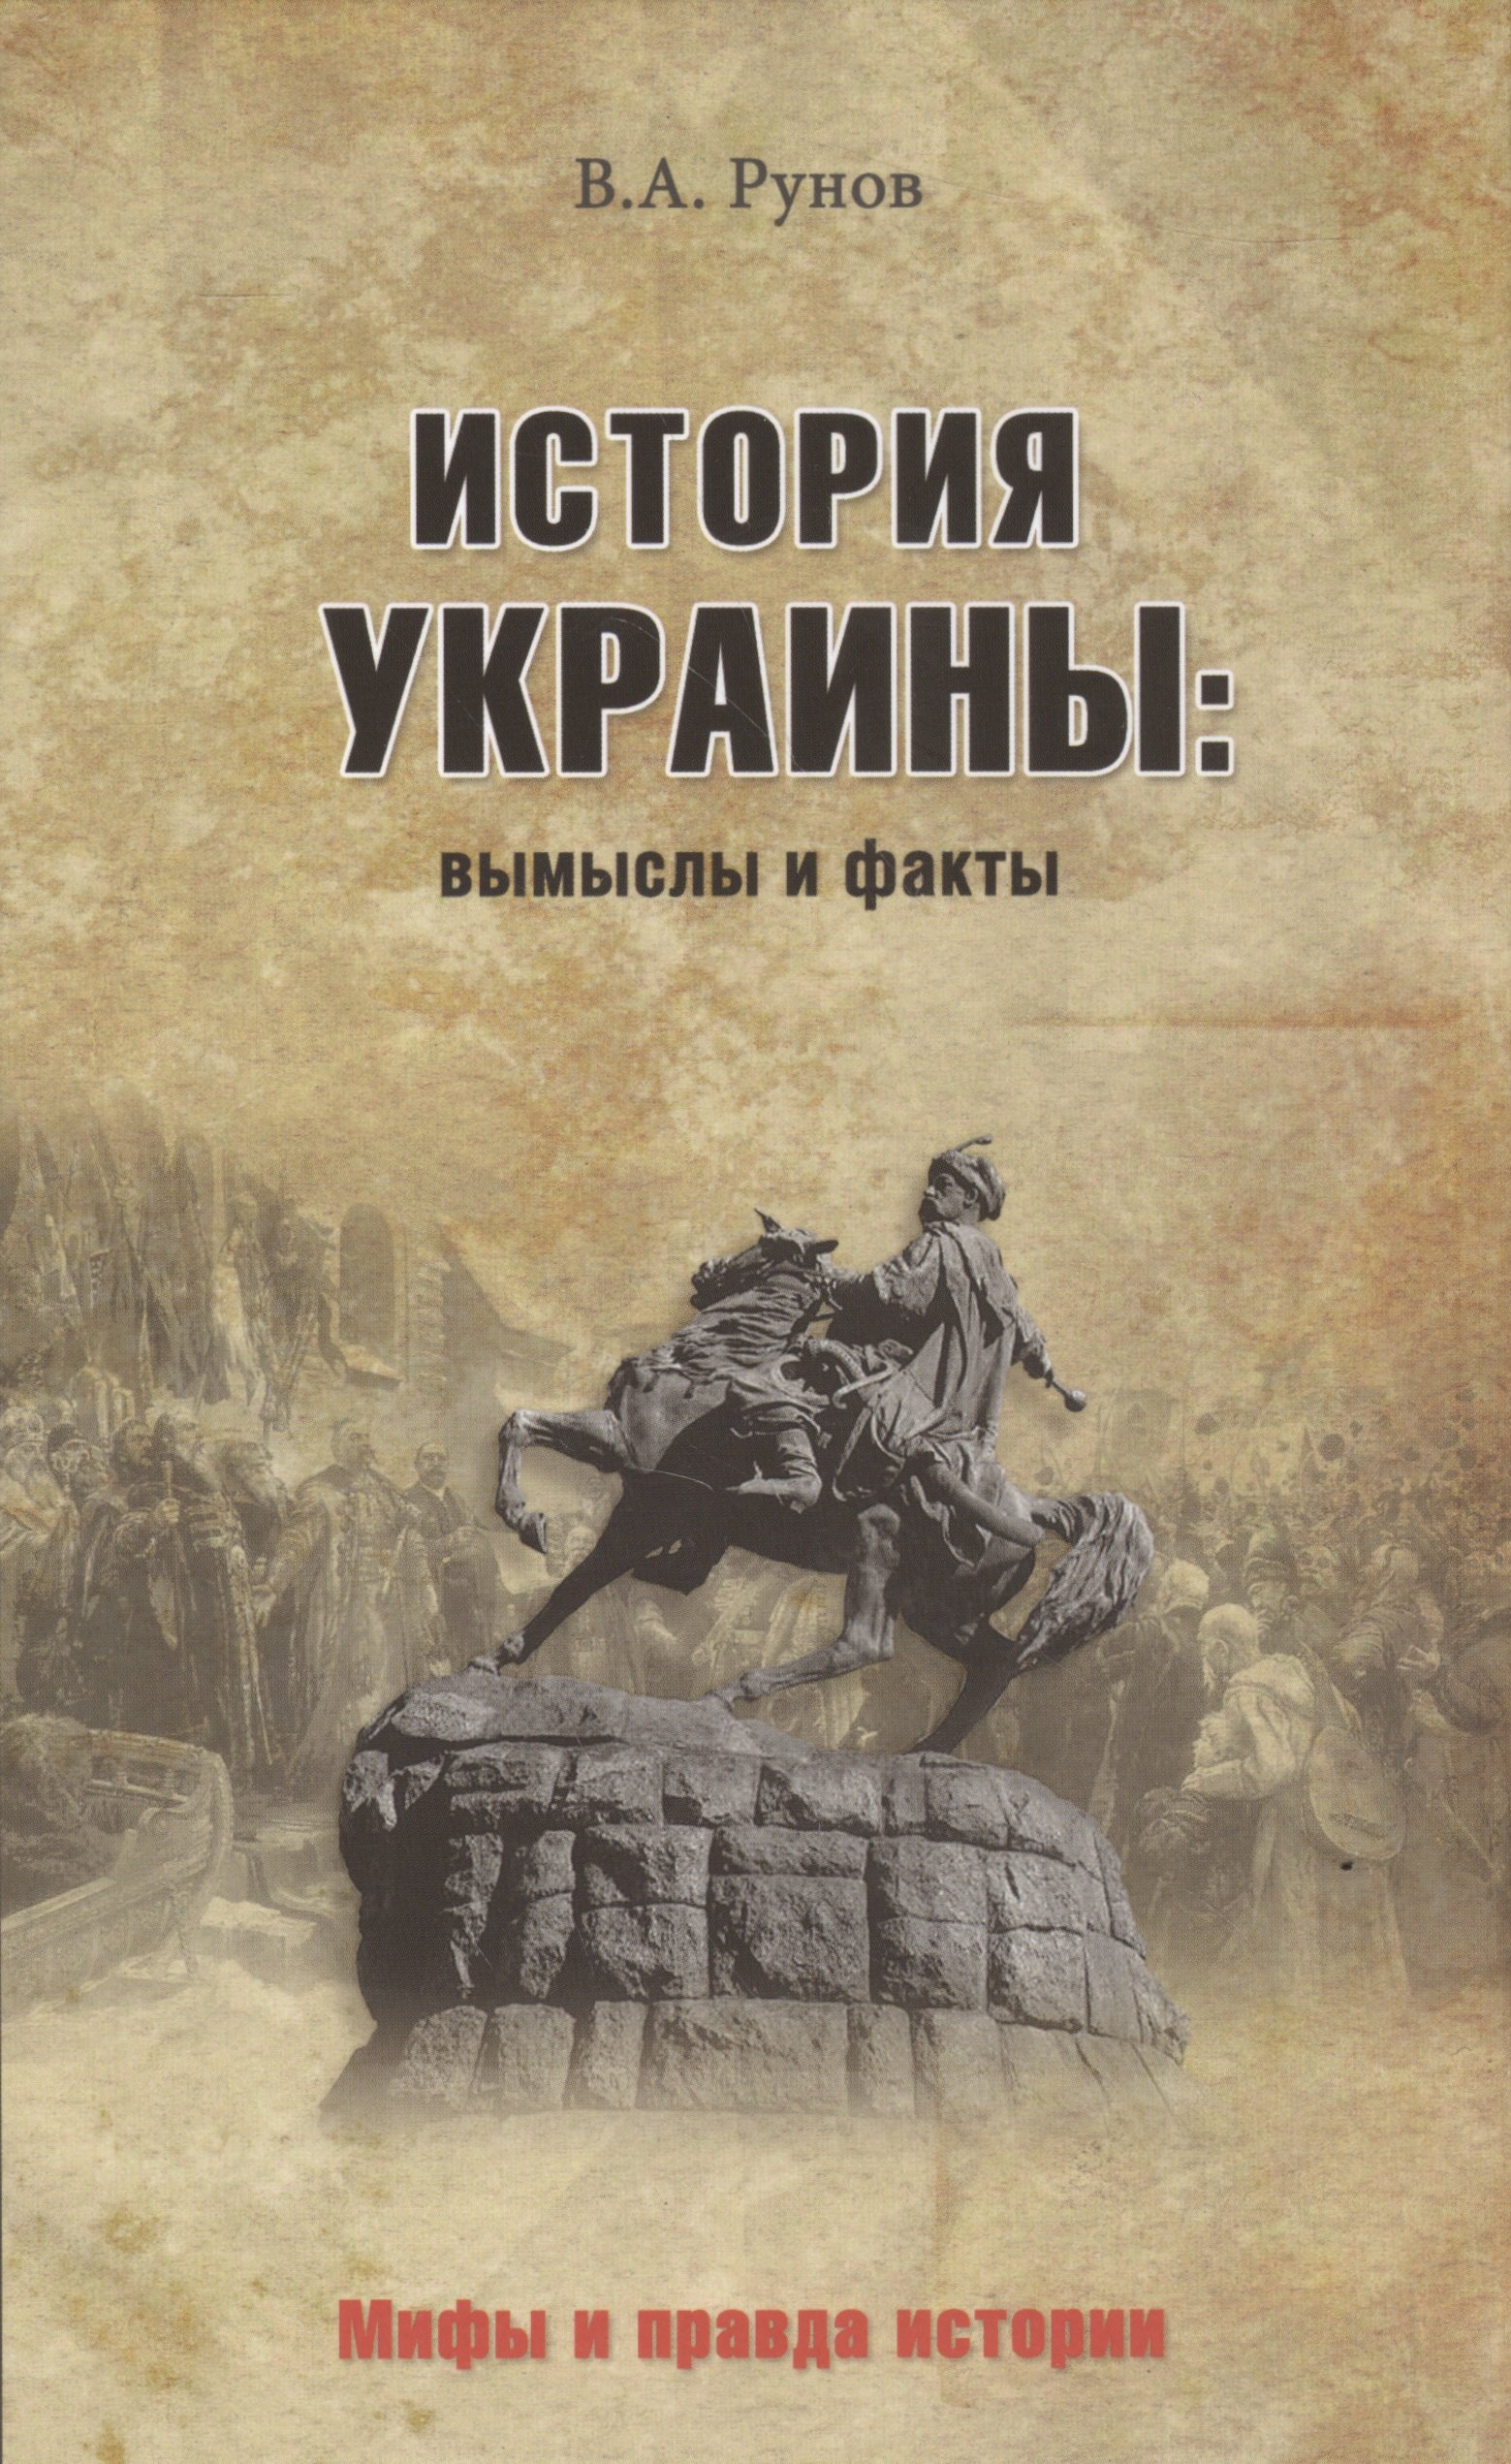 

История Украины: Вымыслы и факты